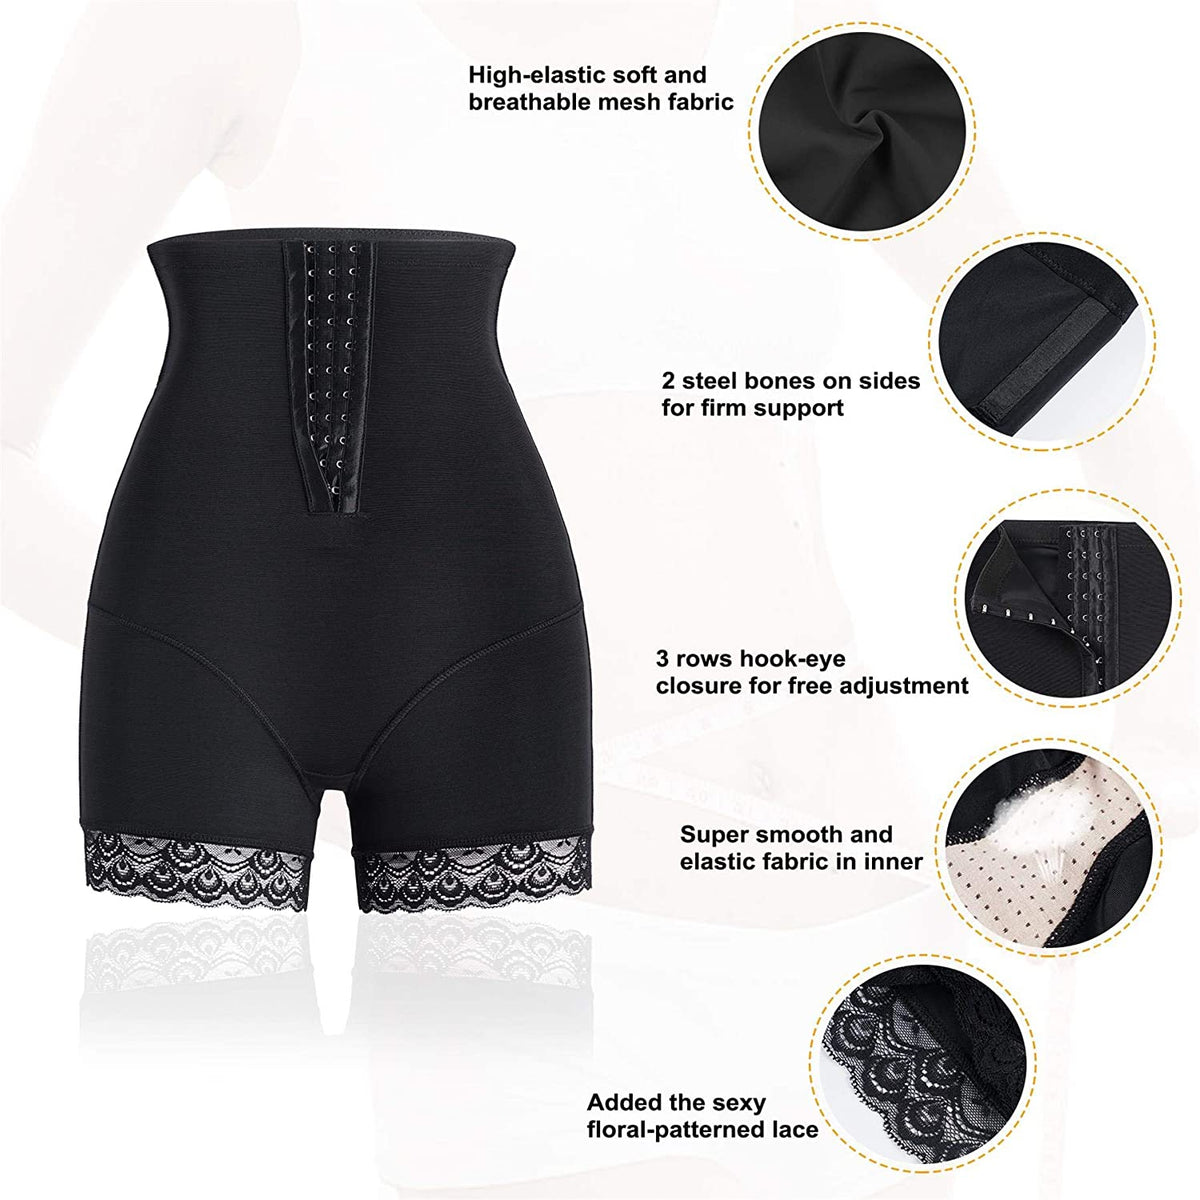 Women High Waist Adjustable Cincher Black Butt Lifter With Lace Edge Details - Nebility